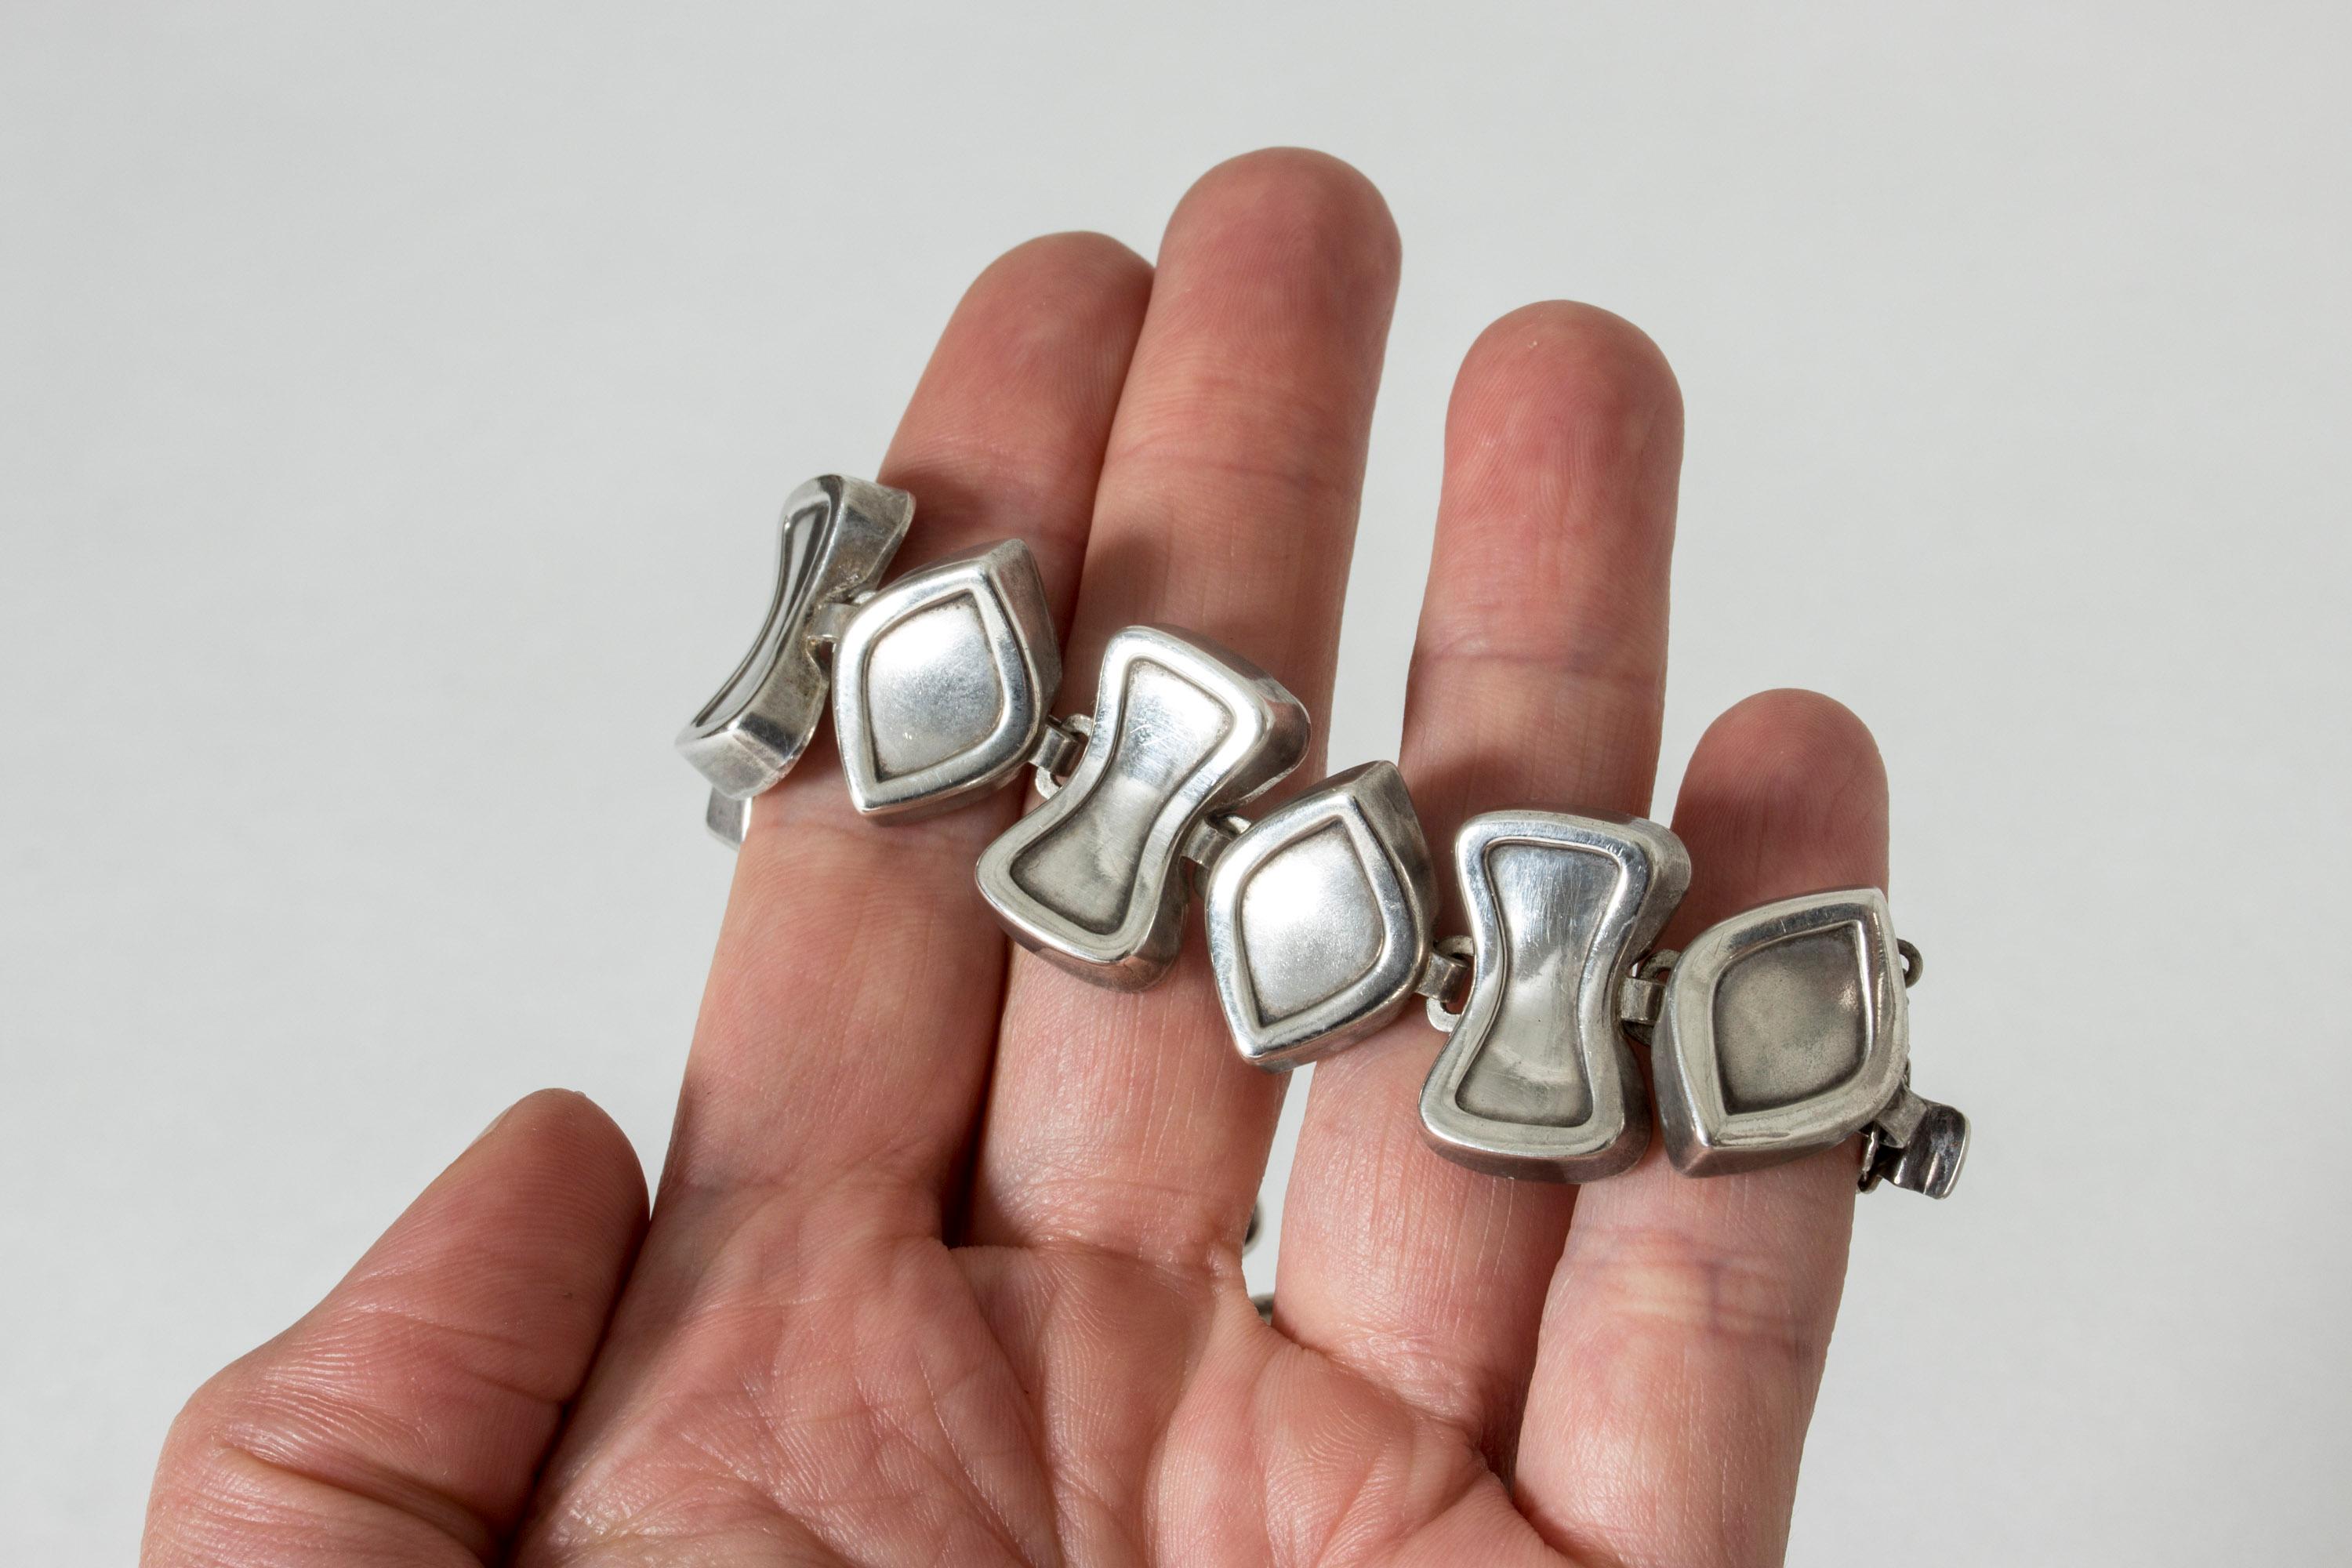 Wunderschönes Silberarmband von Atelier Borgila in einem Design aus abstrakten Formen. Verspielt und cool, angenehm zu tragen.